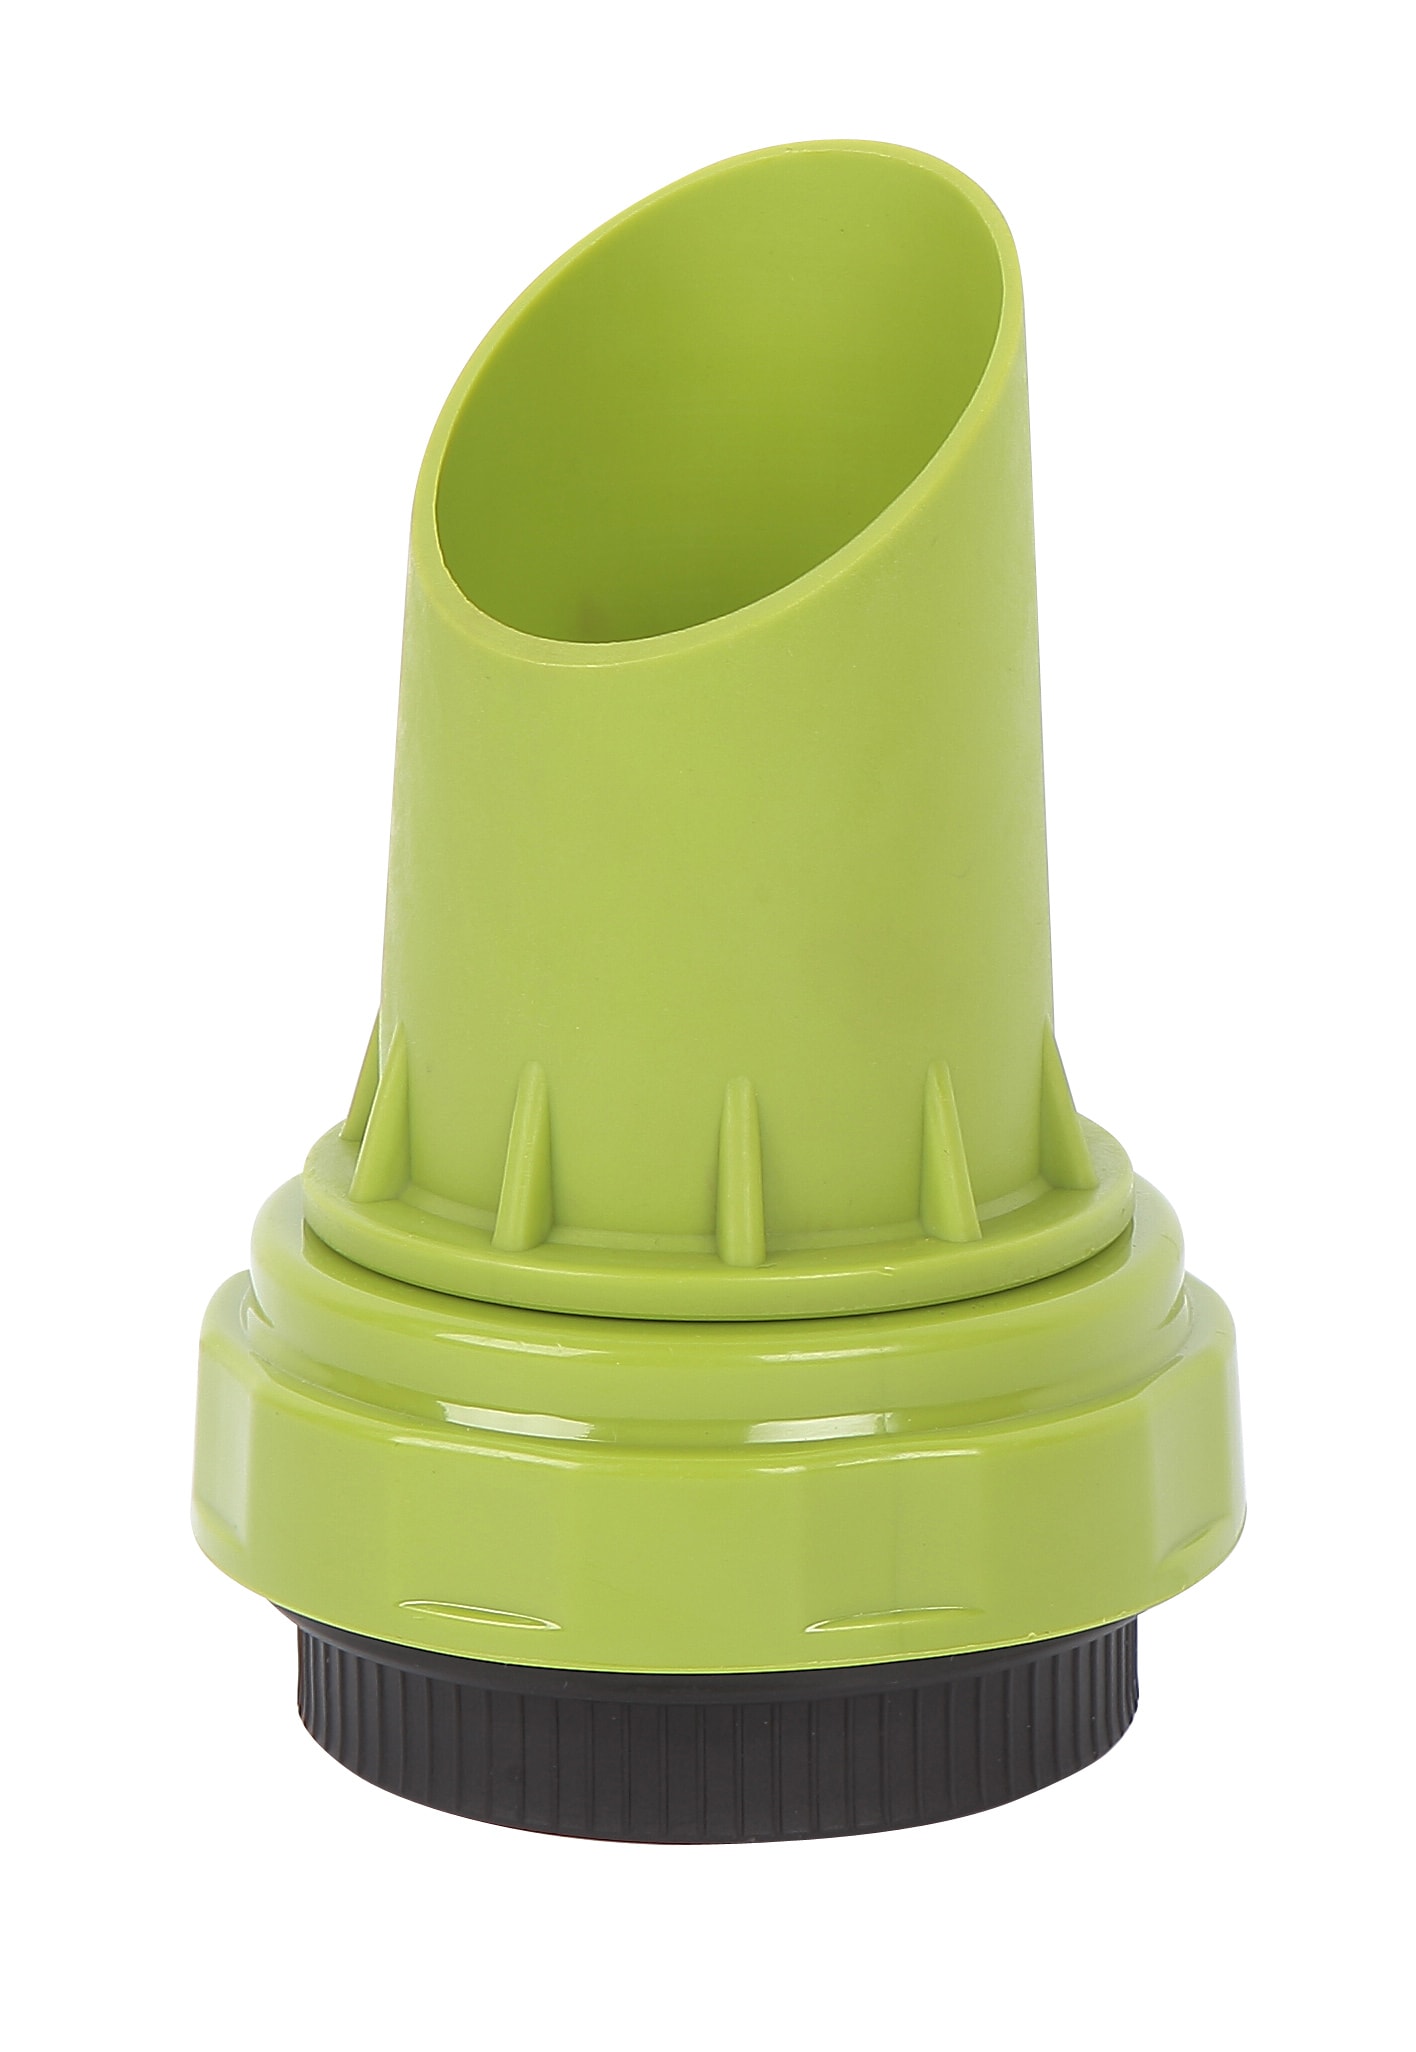 Project Source Paint spout Bucket Lid Attachment Paint Can Pour Spout (Fits  Bucket Size: 5-Gallon) at